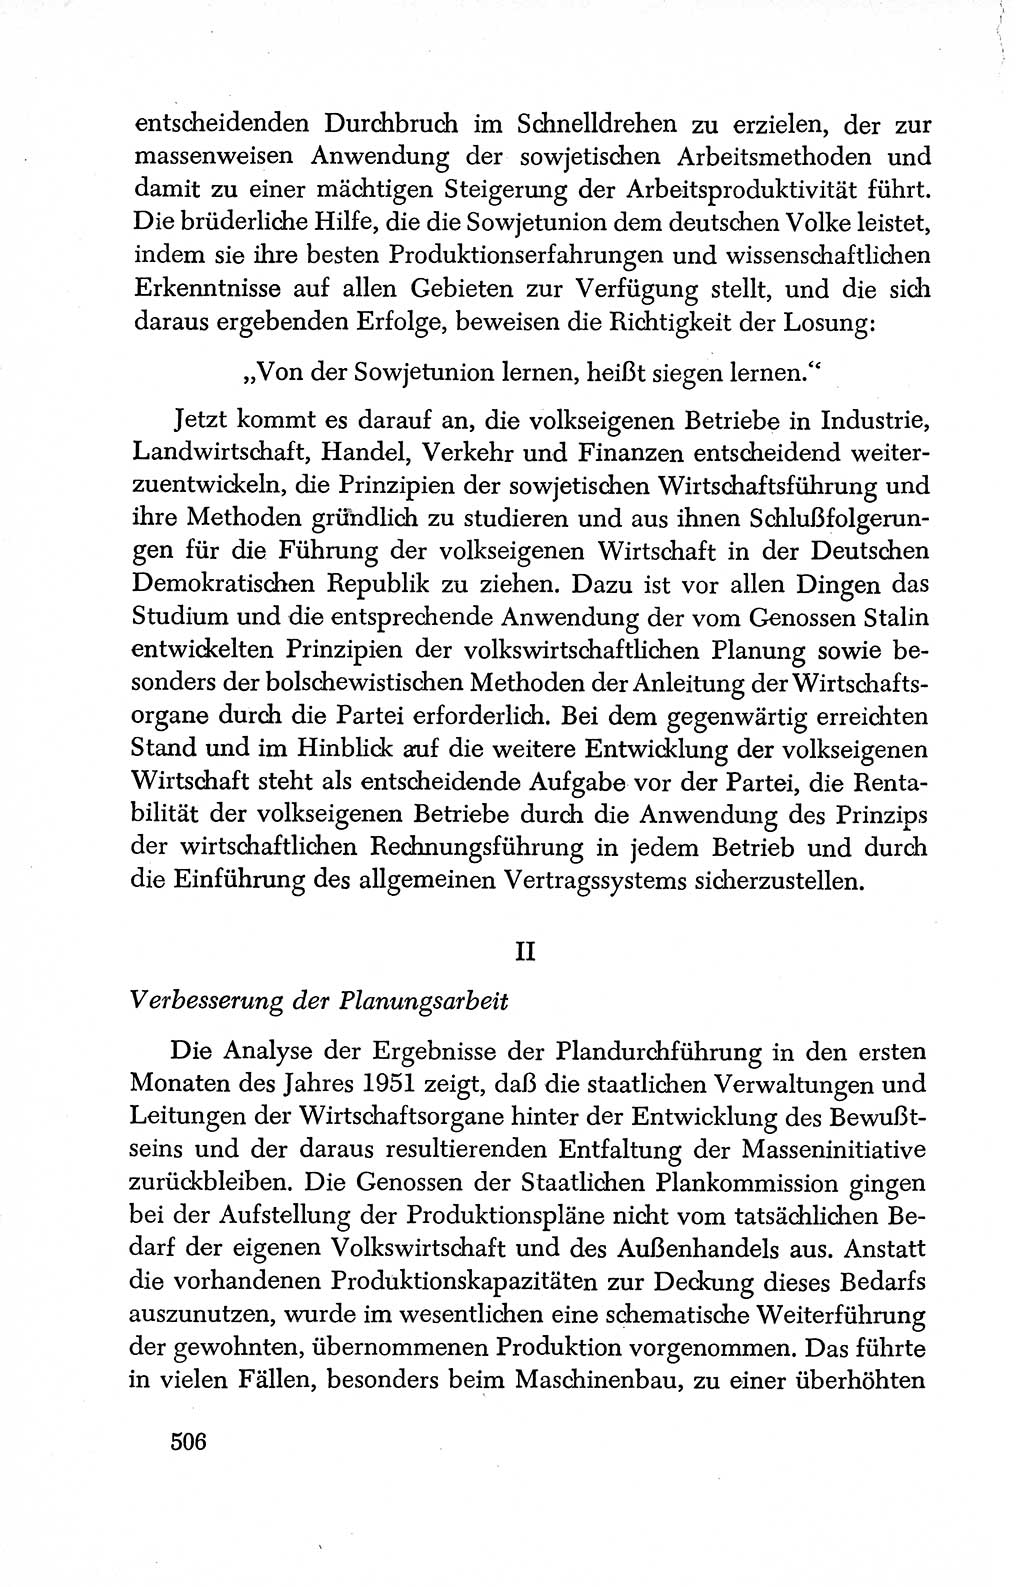 Dokumente der Sozialistischen Einheitspartei Deutschlands (SED) [Deutsche Demokratische Republik (DDR)] 1950-1952, Seite 506 (Dok. SED DDR 1950-1952, S. 506)